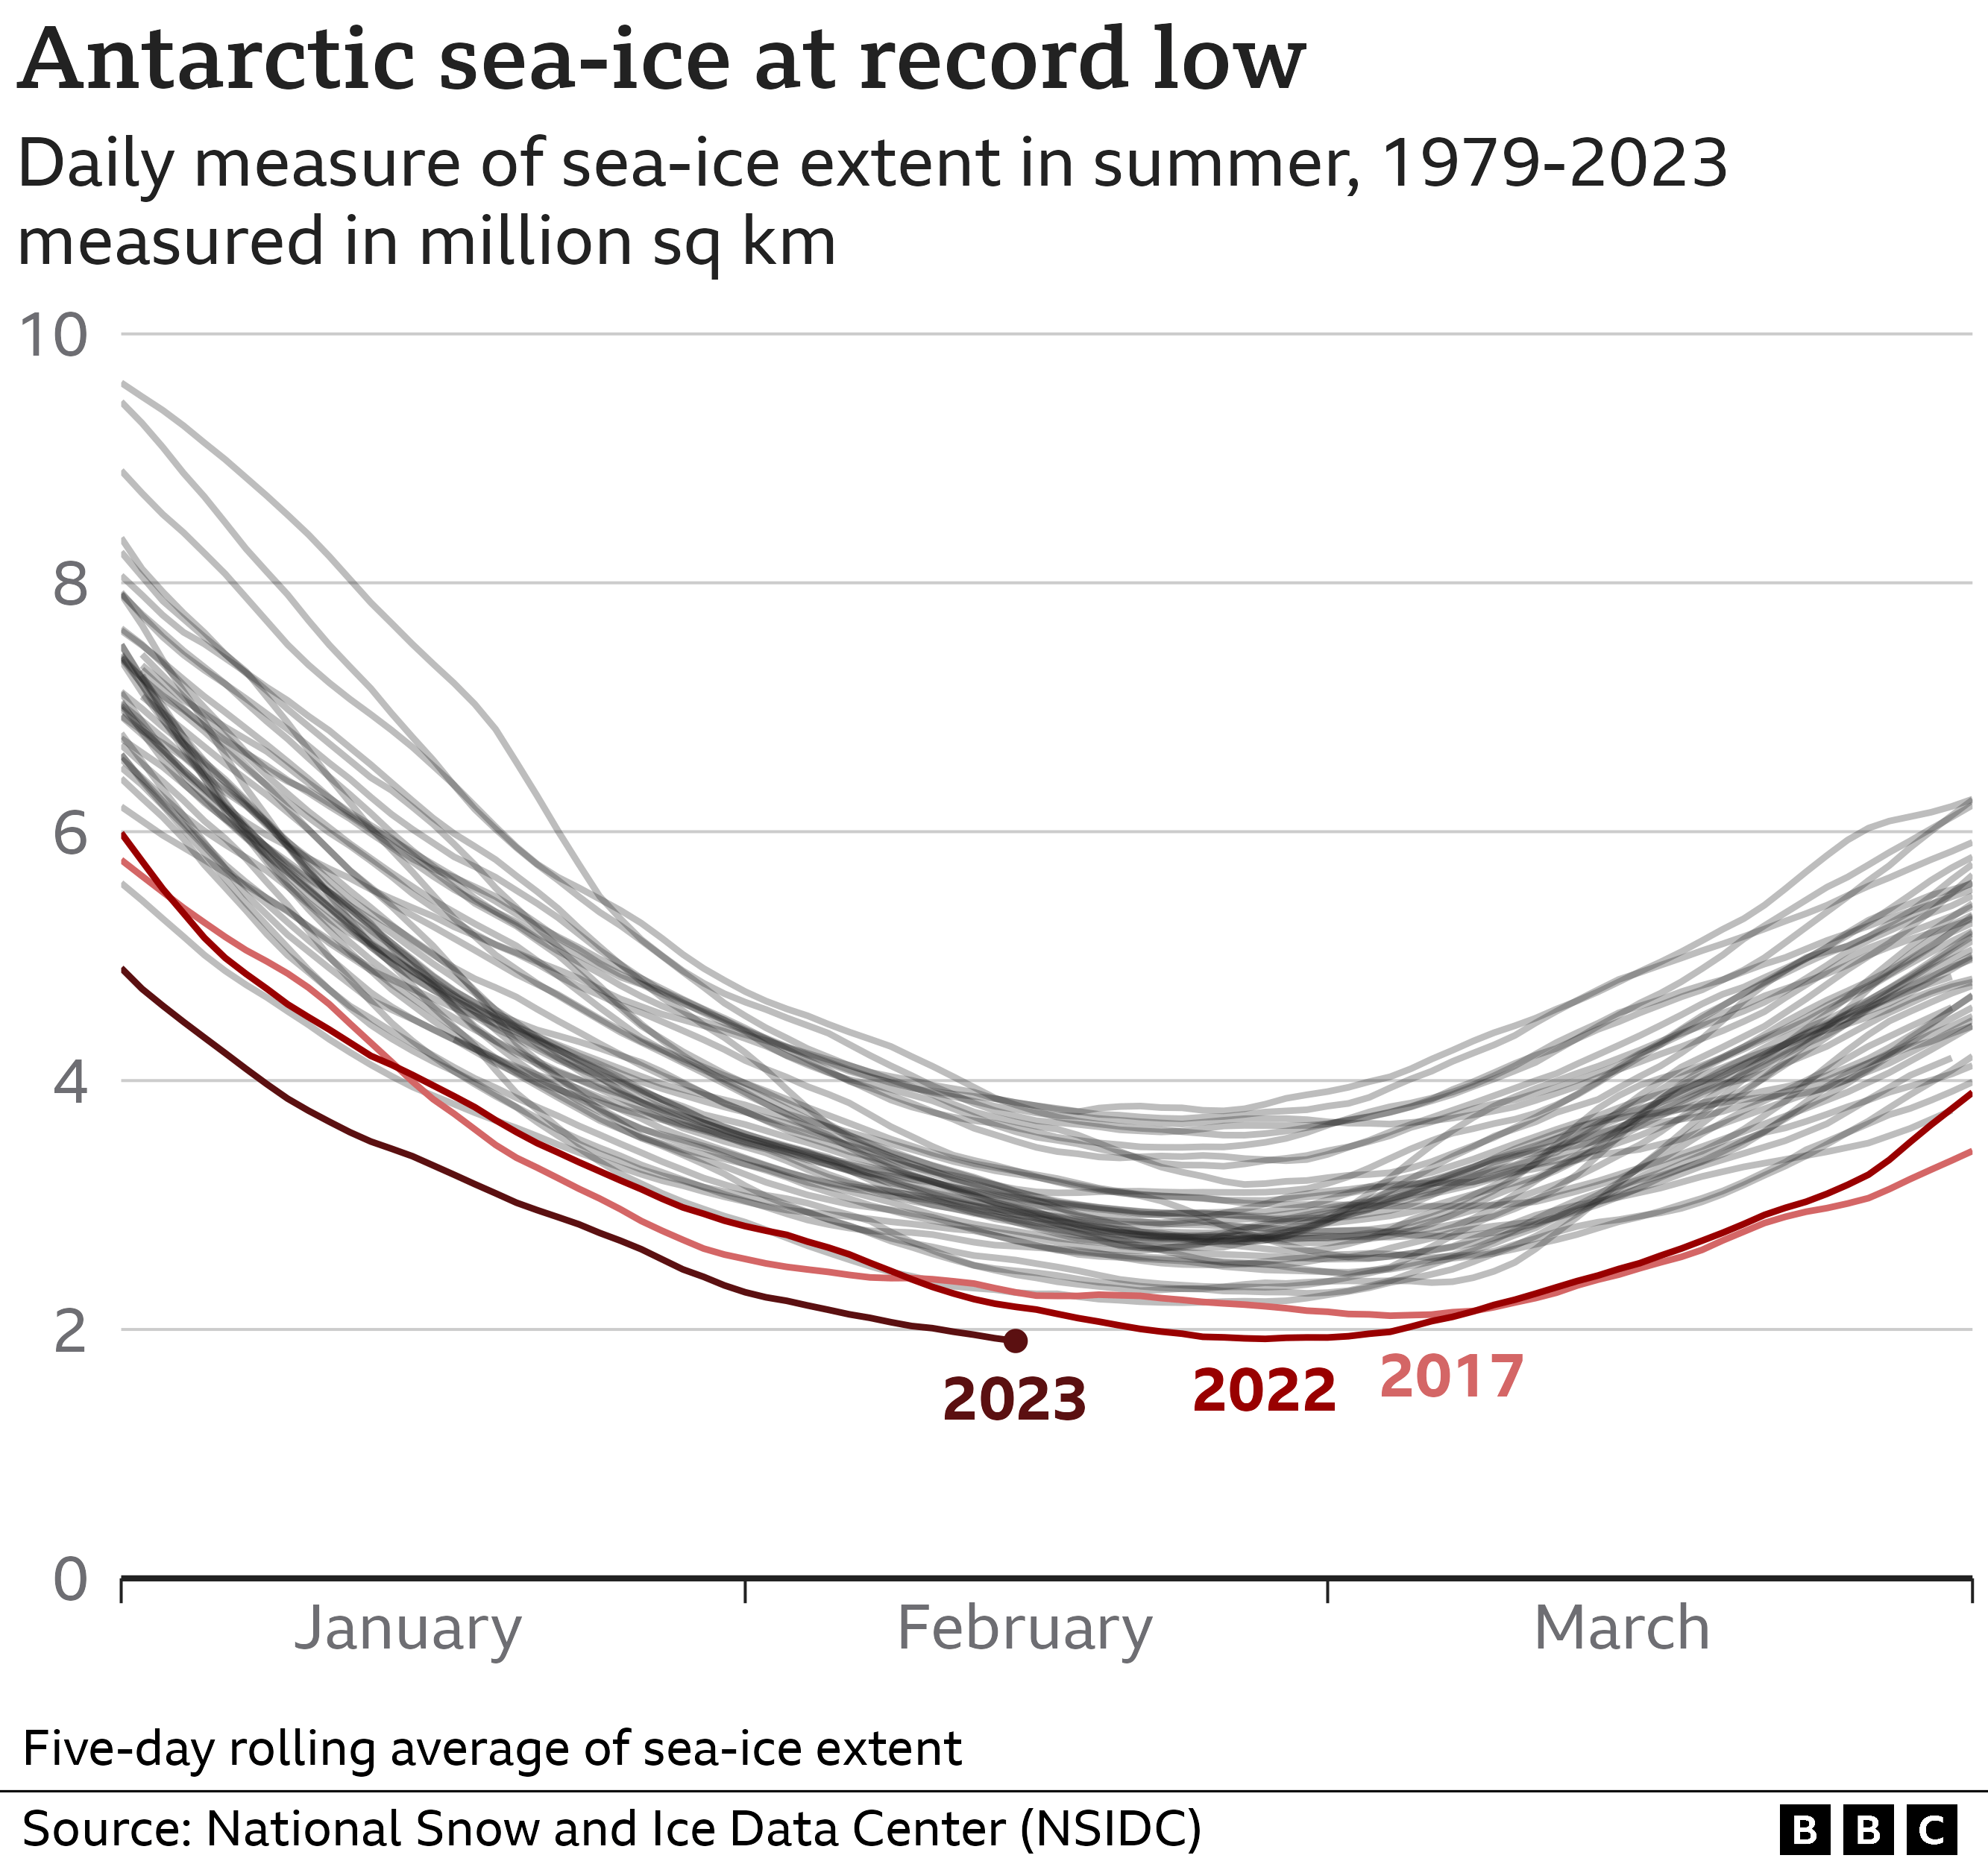 Gráfico de líneas que muestra la medida media móvil de 5 días de la extensión del hielo marino en la Antártida con una línea por año desde 1979. Se han resaltado los tres años más recientes: en 2017 se estableció un récord a principios de marzo; se batió en febrero de 2022 y de nuevo en febrero de 2023